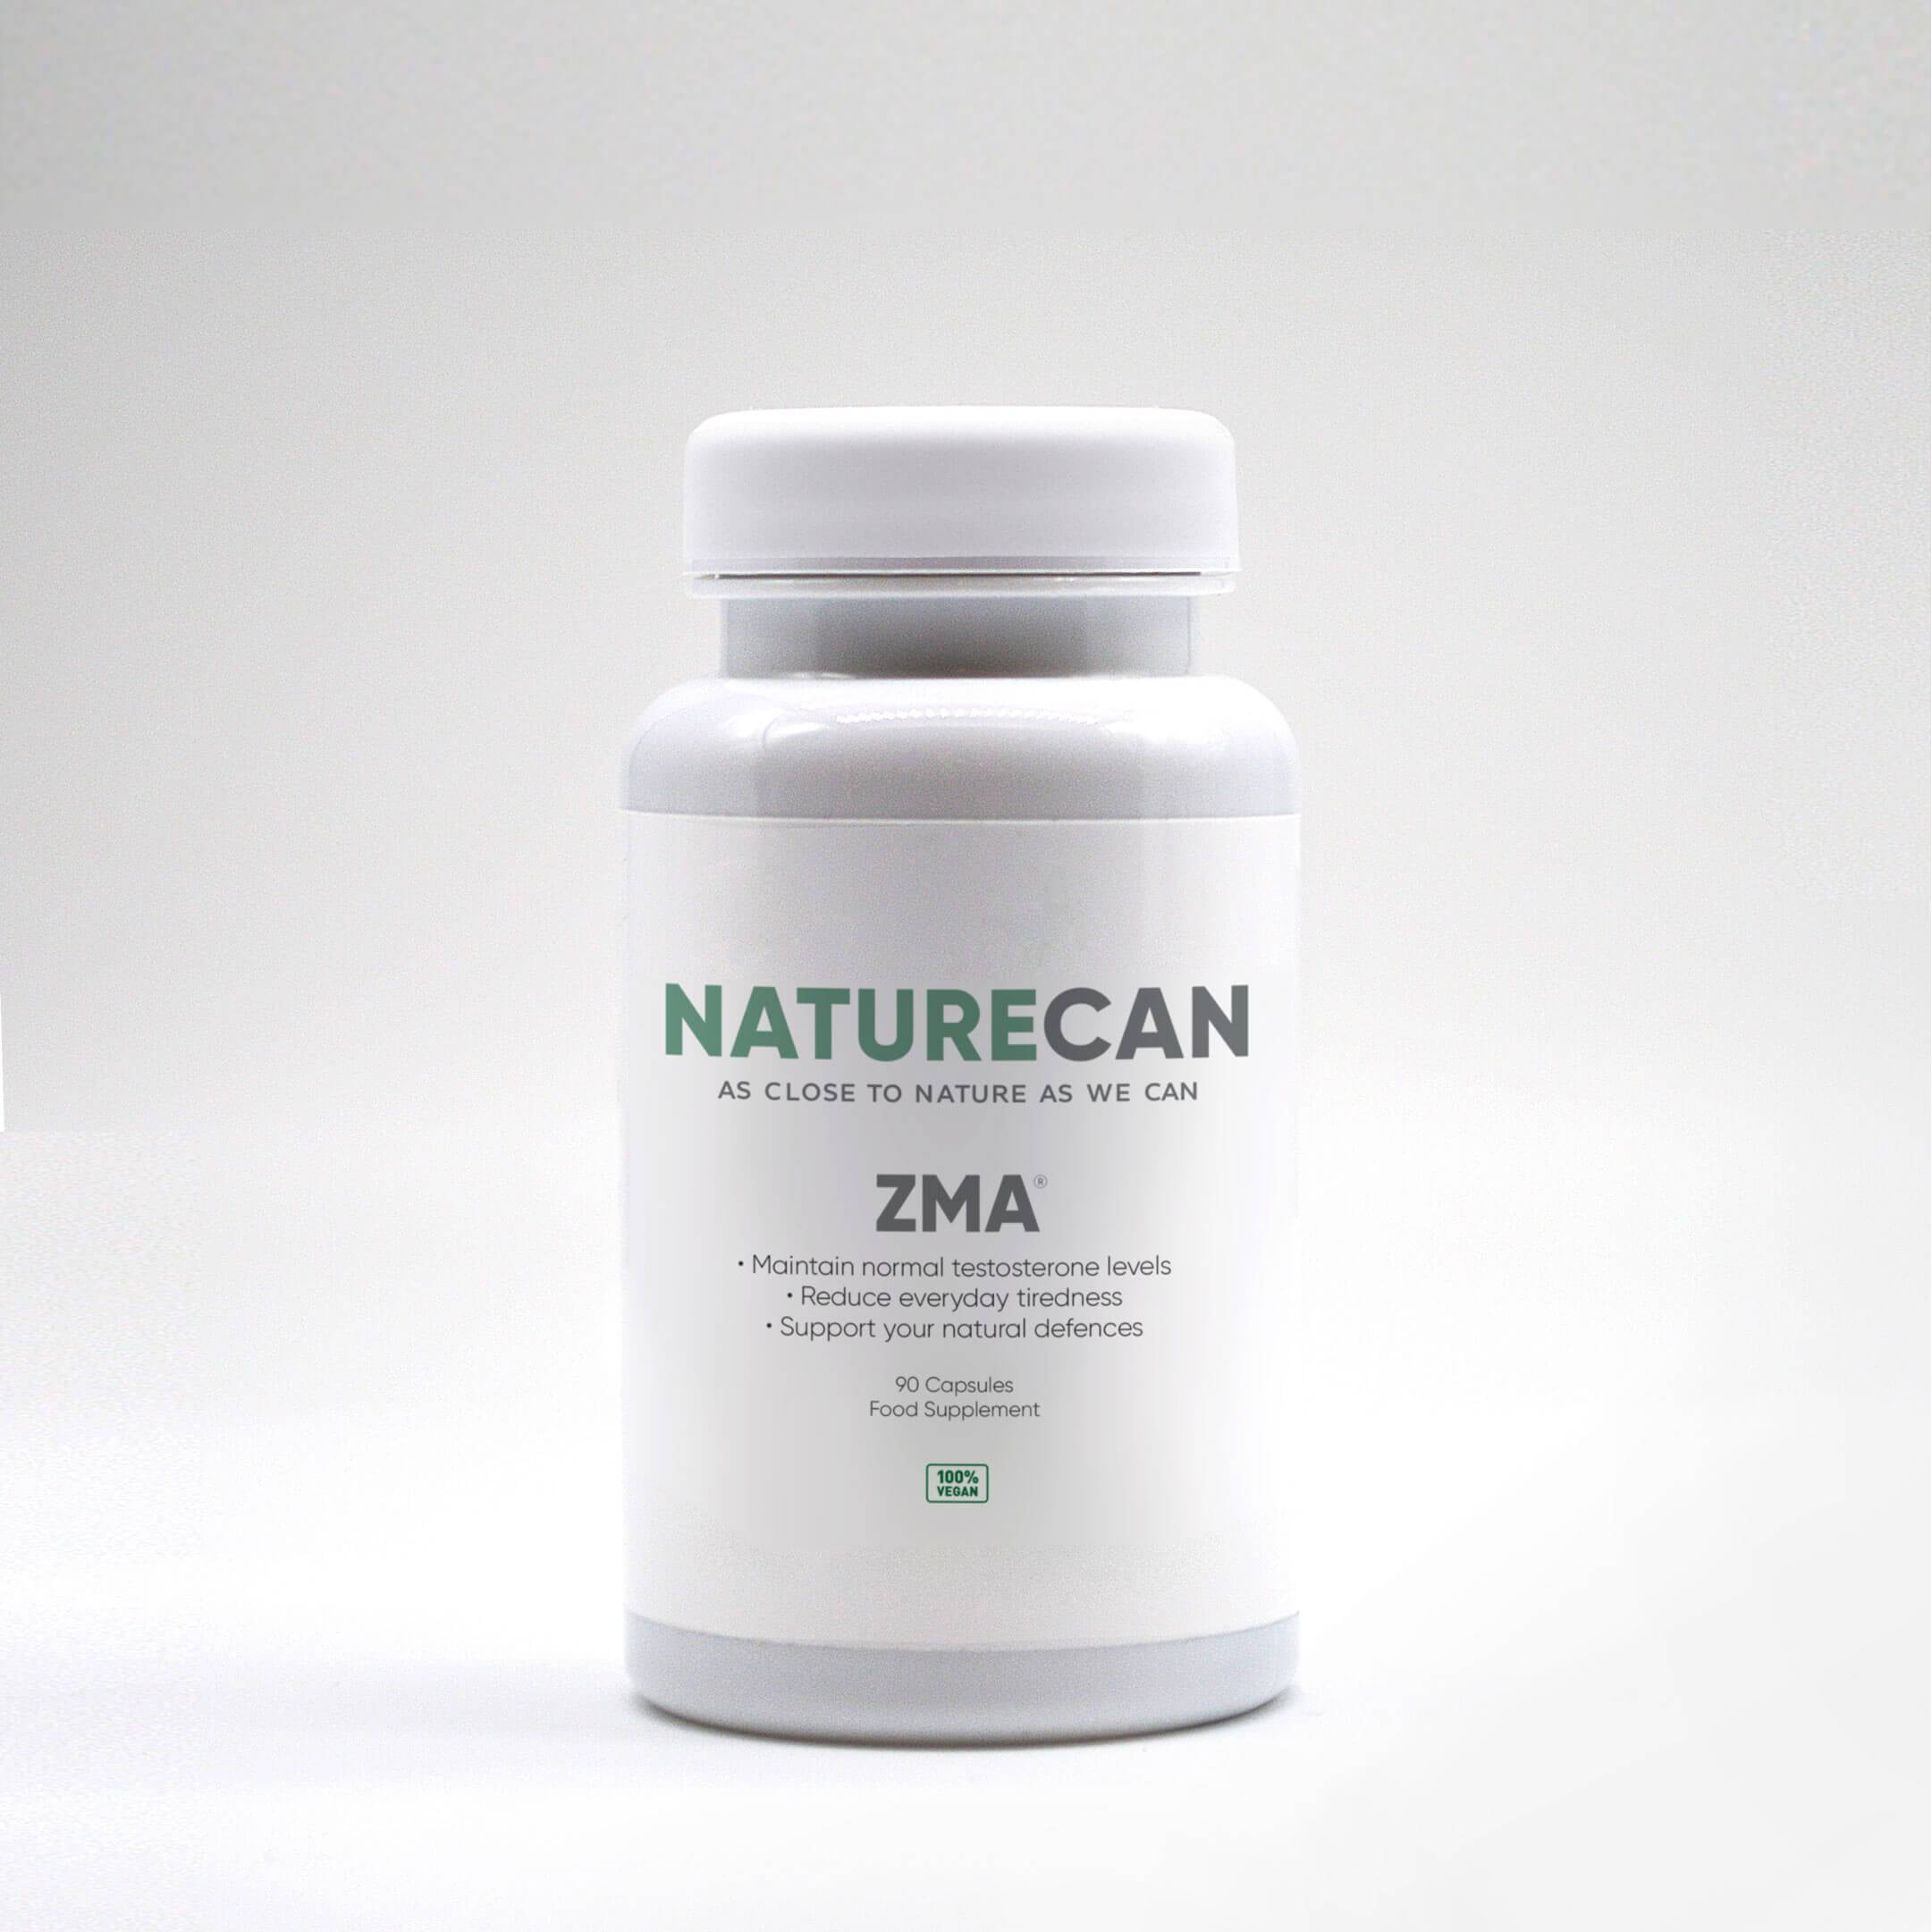 ZMA supplement